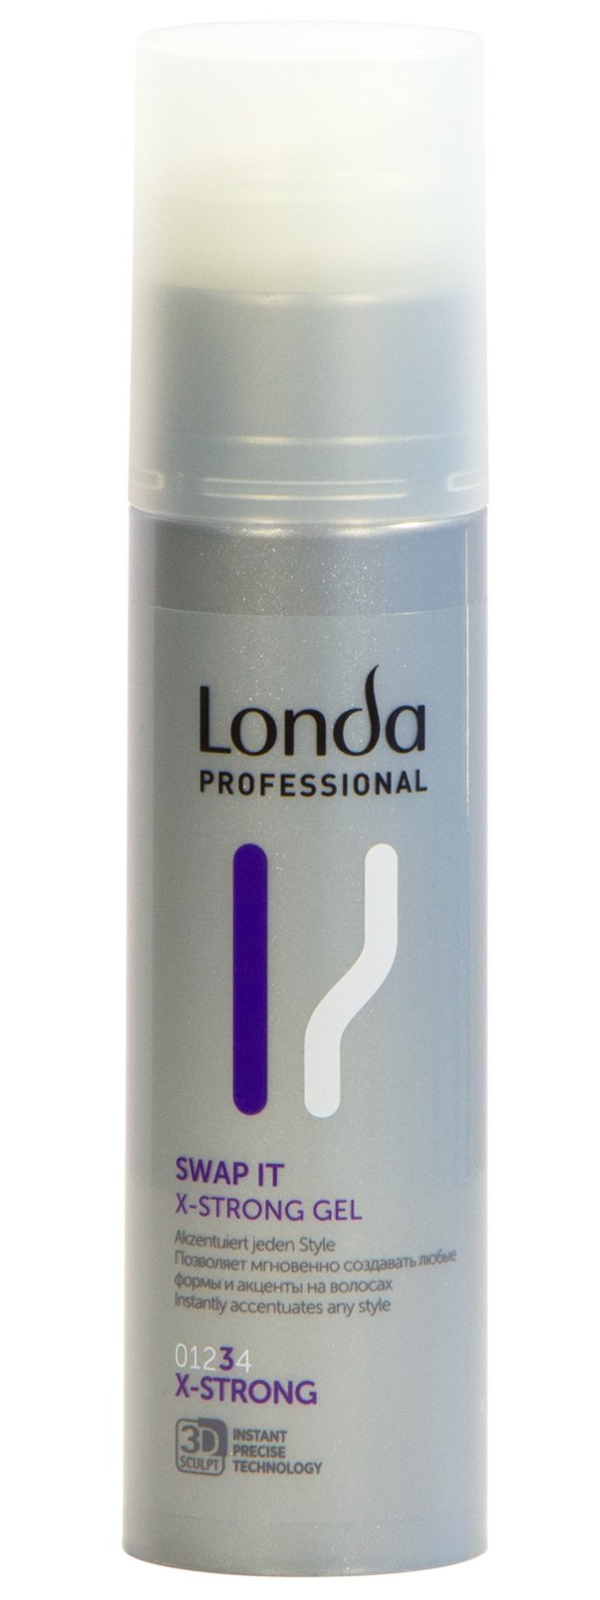 Гель экстрасильной фиксации для укладки волос Londa Professional Men Swart it, 100 мл лак для укладки волос wellaflex экстрасильный экстрасильной фиксации 250мл